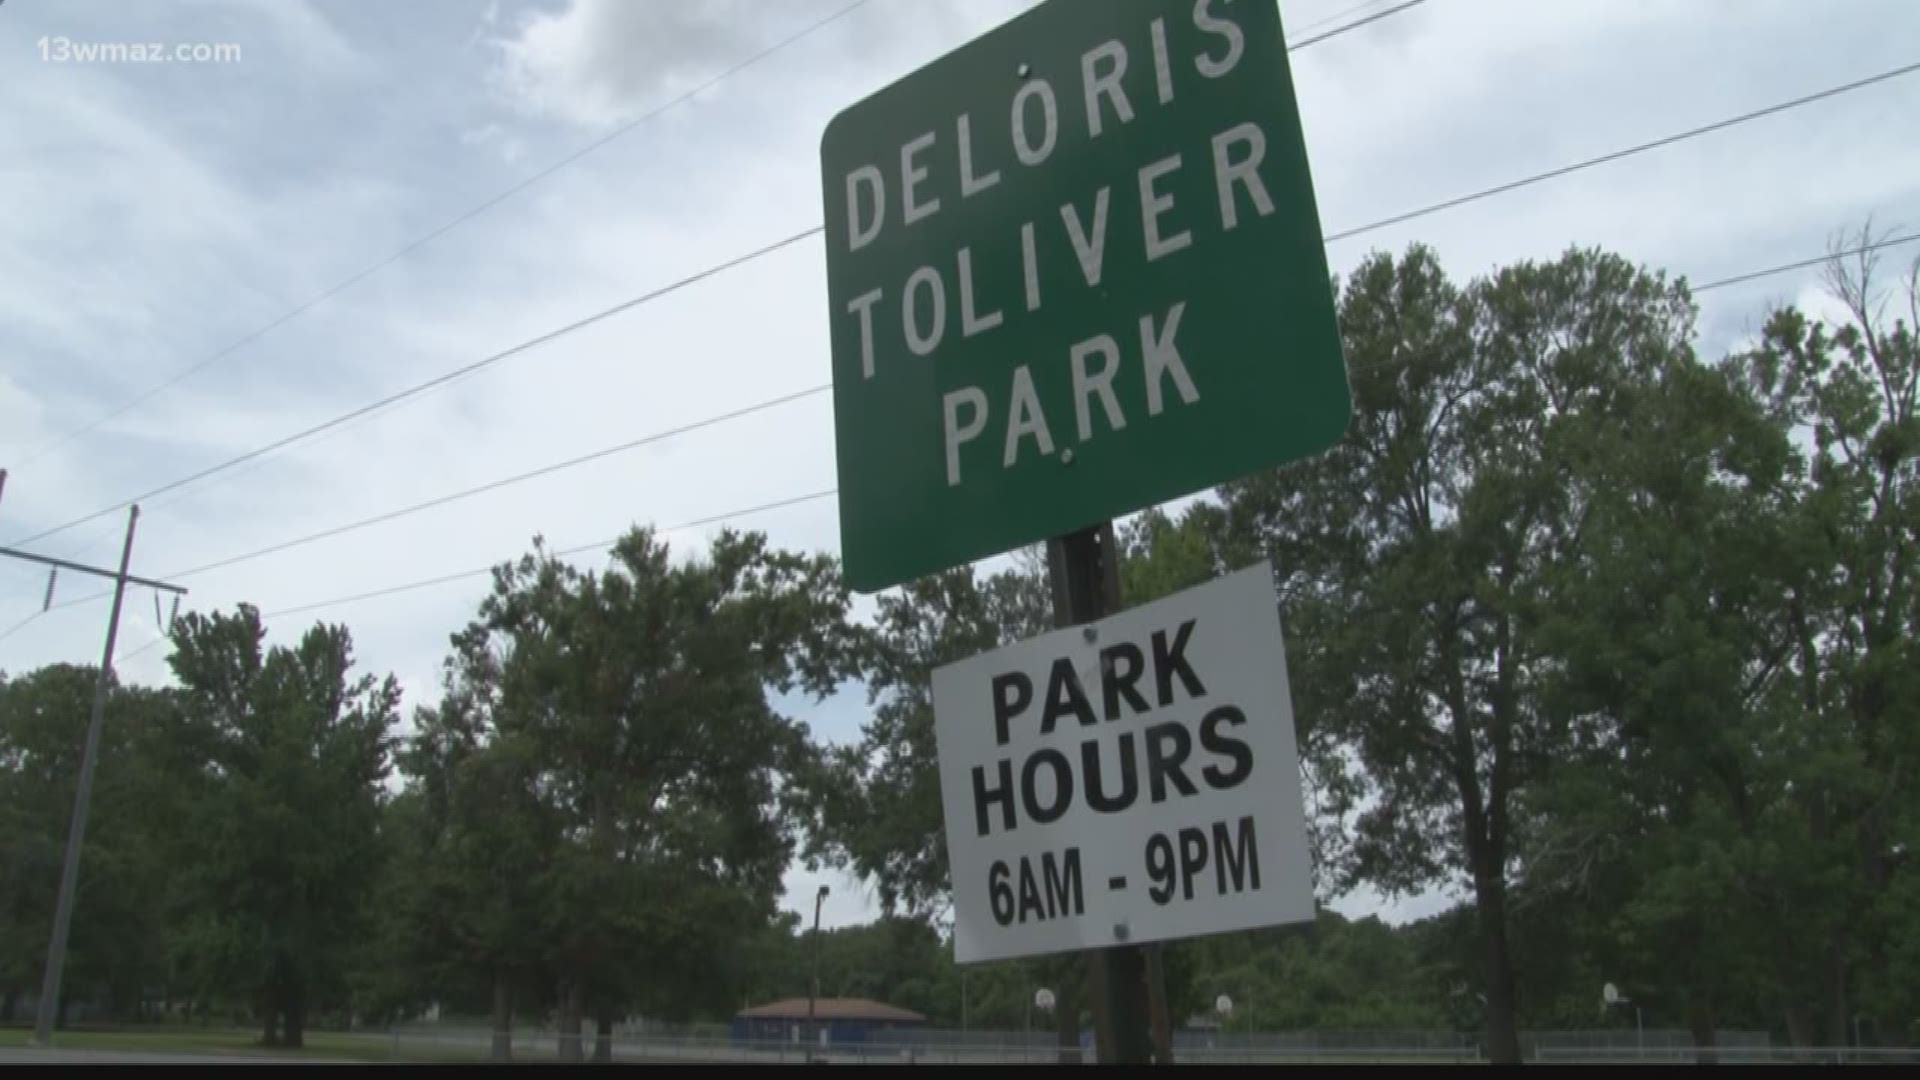 Police precinct to go in Deloris Toliver Park in Warner Robins